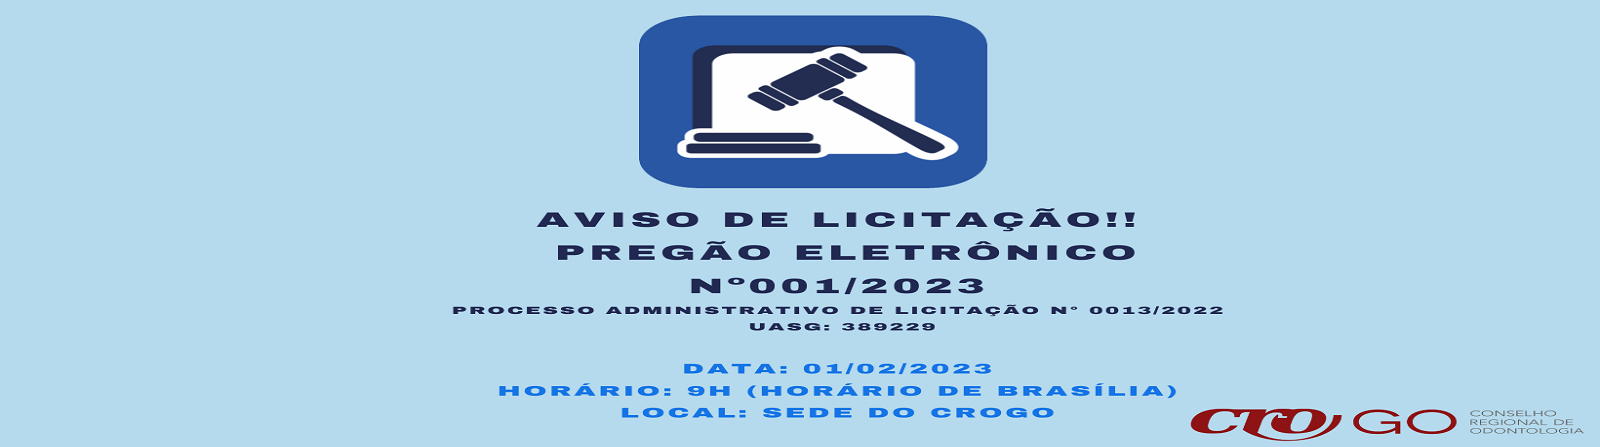 Aviso_de_Licitao_PREGO_ELETRNICO_-_CROGO_N_012023__-_1600_x_447